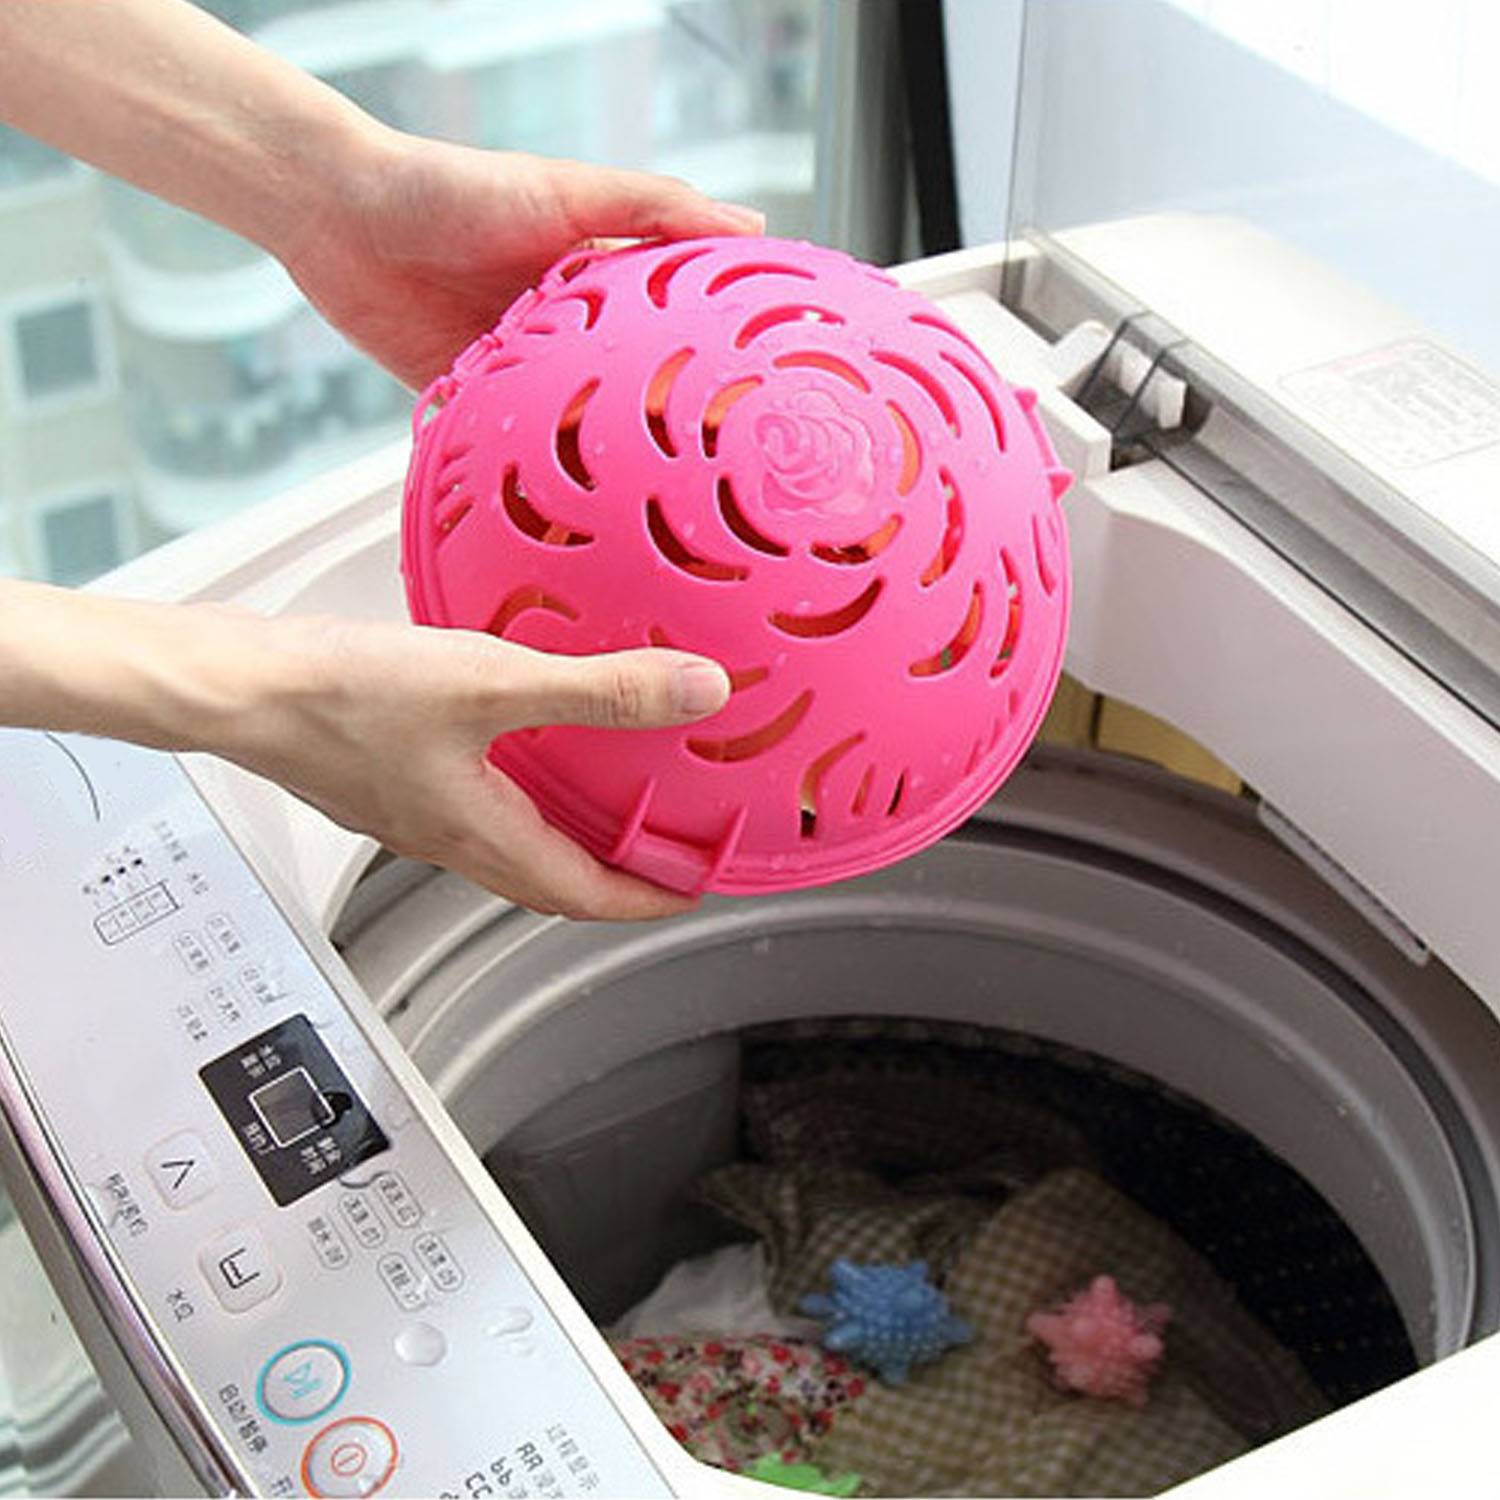 Как стирать бюстгальтер: можно ли и как правильно в стиральной машине-автомат, в мешке и если его нет, в шаре (сфере) для стирки лифчика, как вернуть форму?